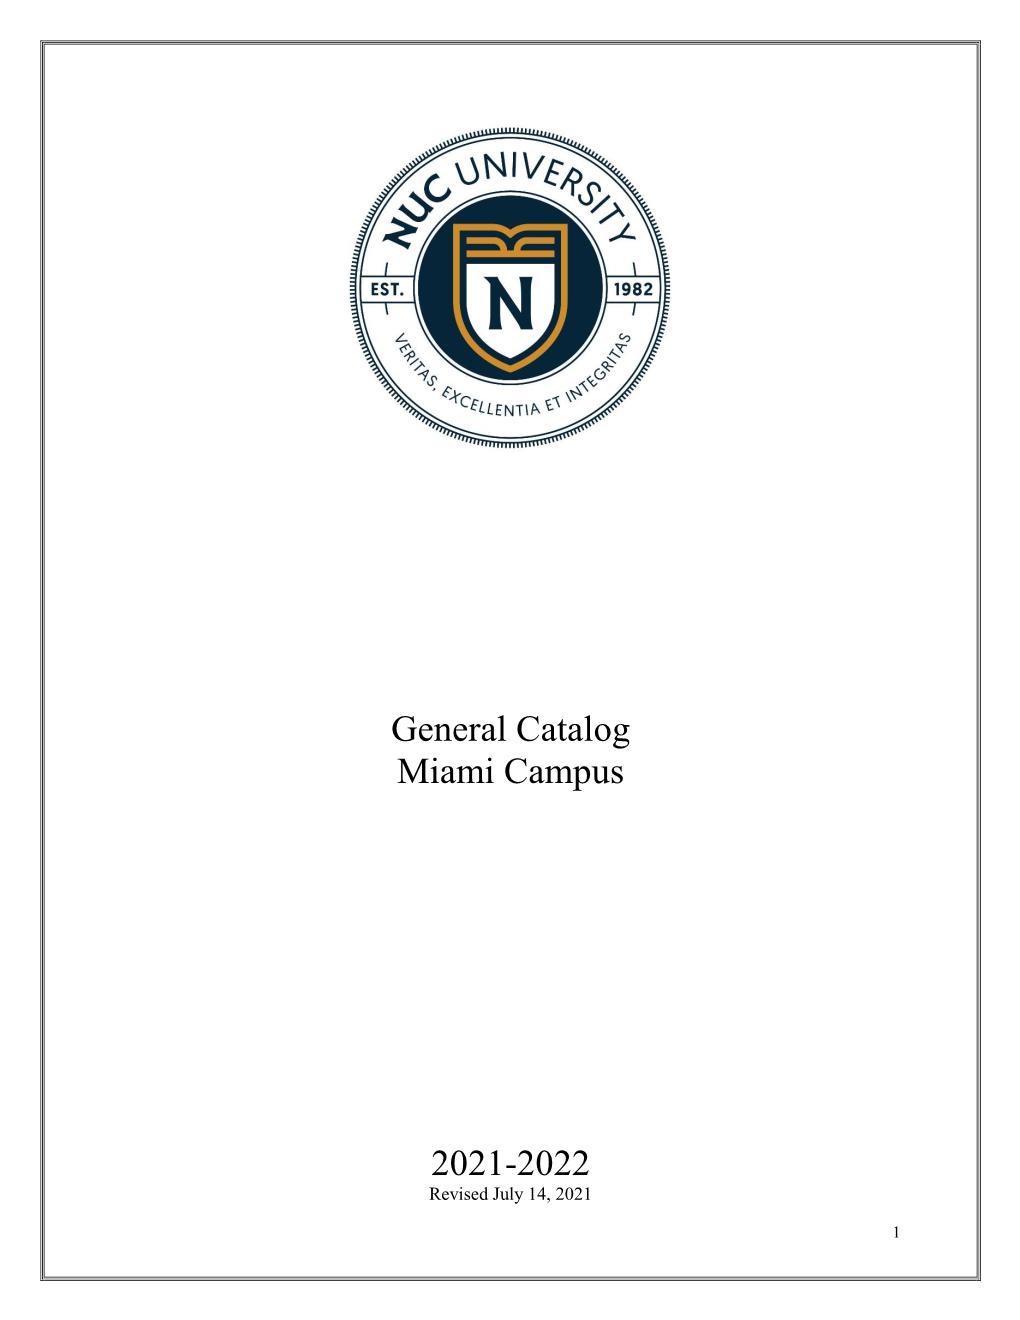 General Catalog Miami Campus 2021-2022